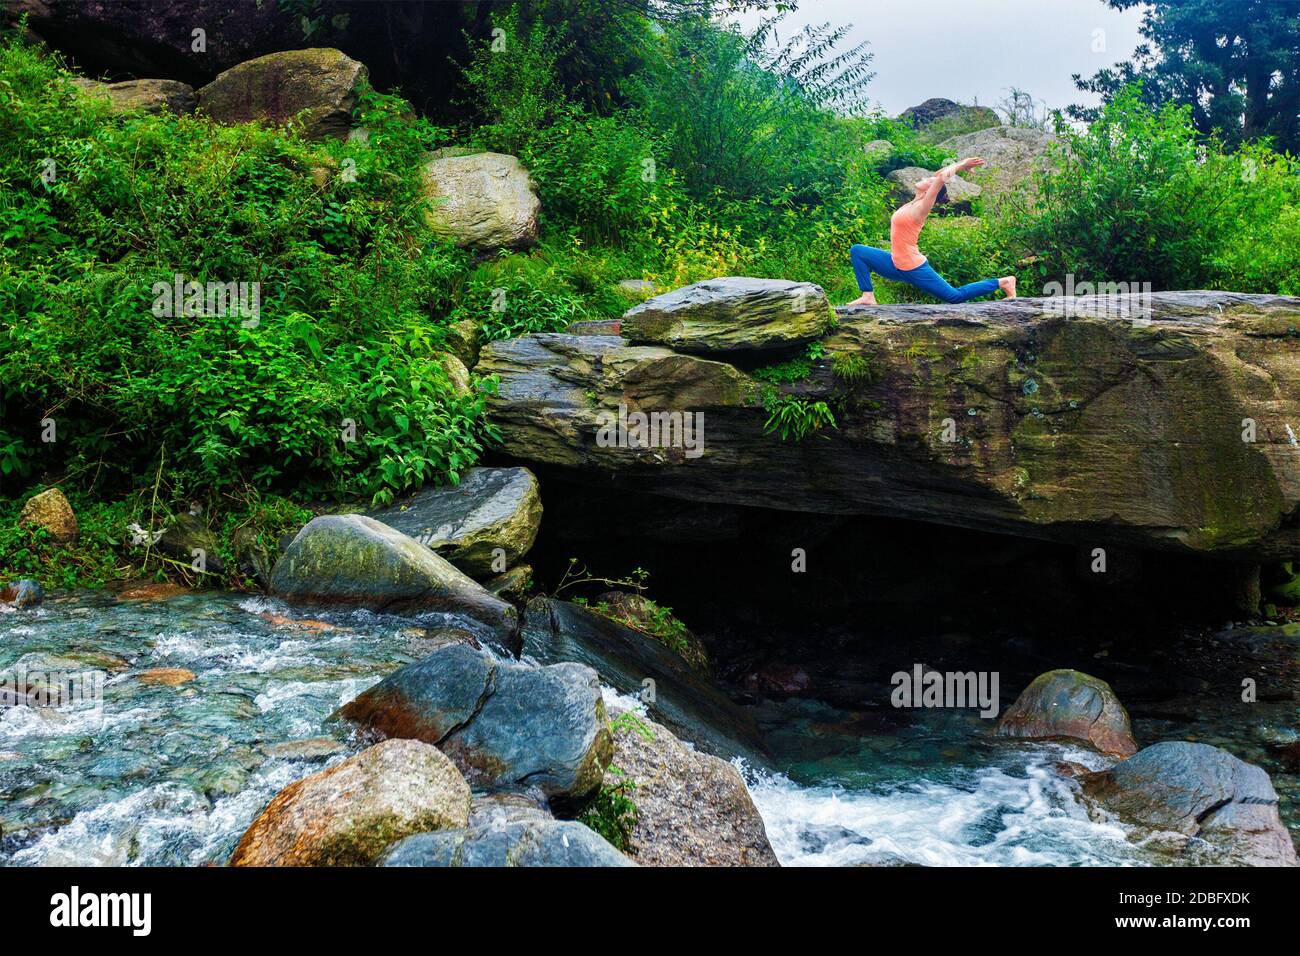 Yoga à l'extérieur - femme sportive pratique yoga Anjaneyasana - fente basse en croissant en plein air dans les montagnes Banque D'Images